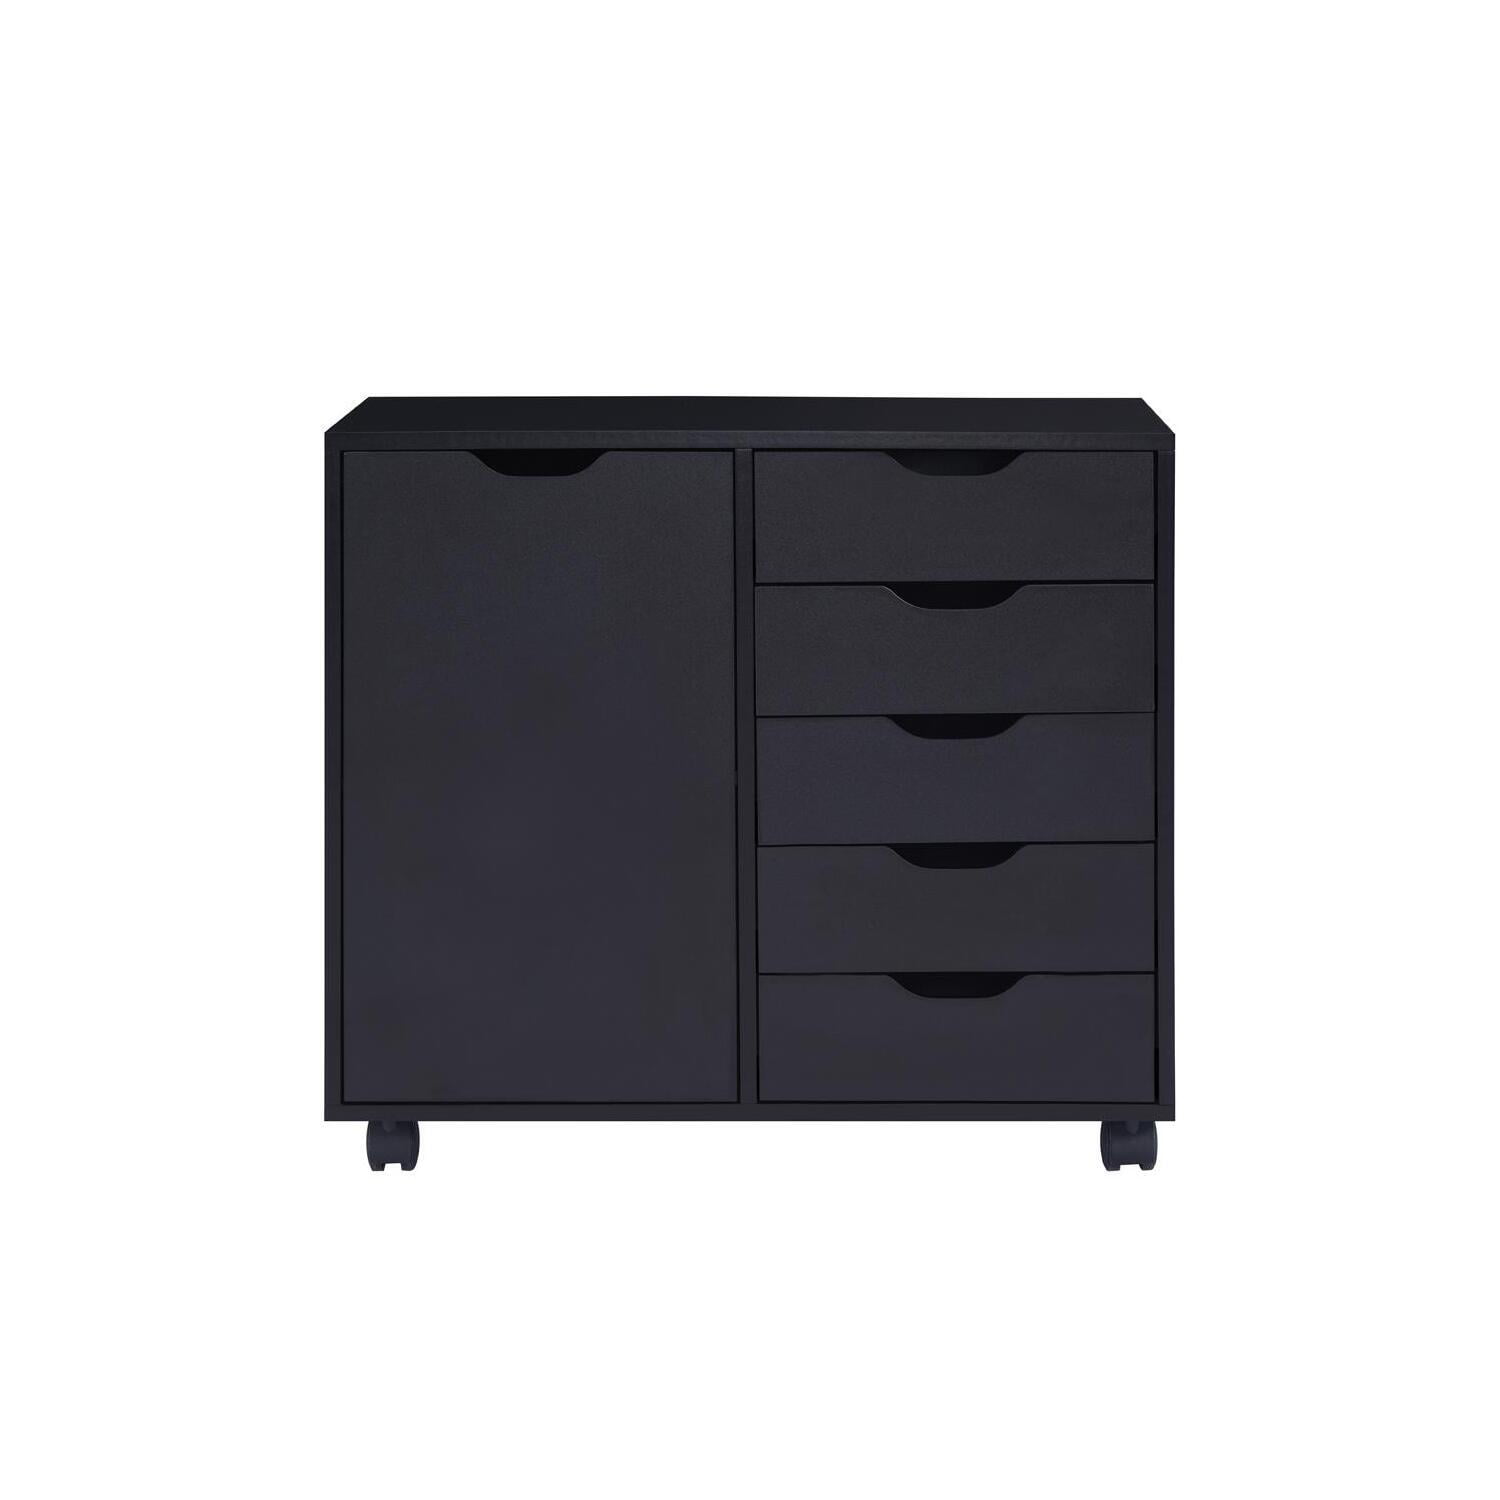 MAKEUP Drawer Underwear Organizer Black - Storage Organiser with 12  Compartments 'Home', black 30x30x10 cm